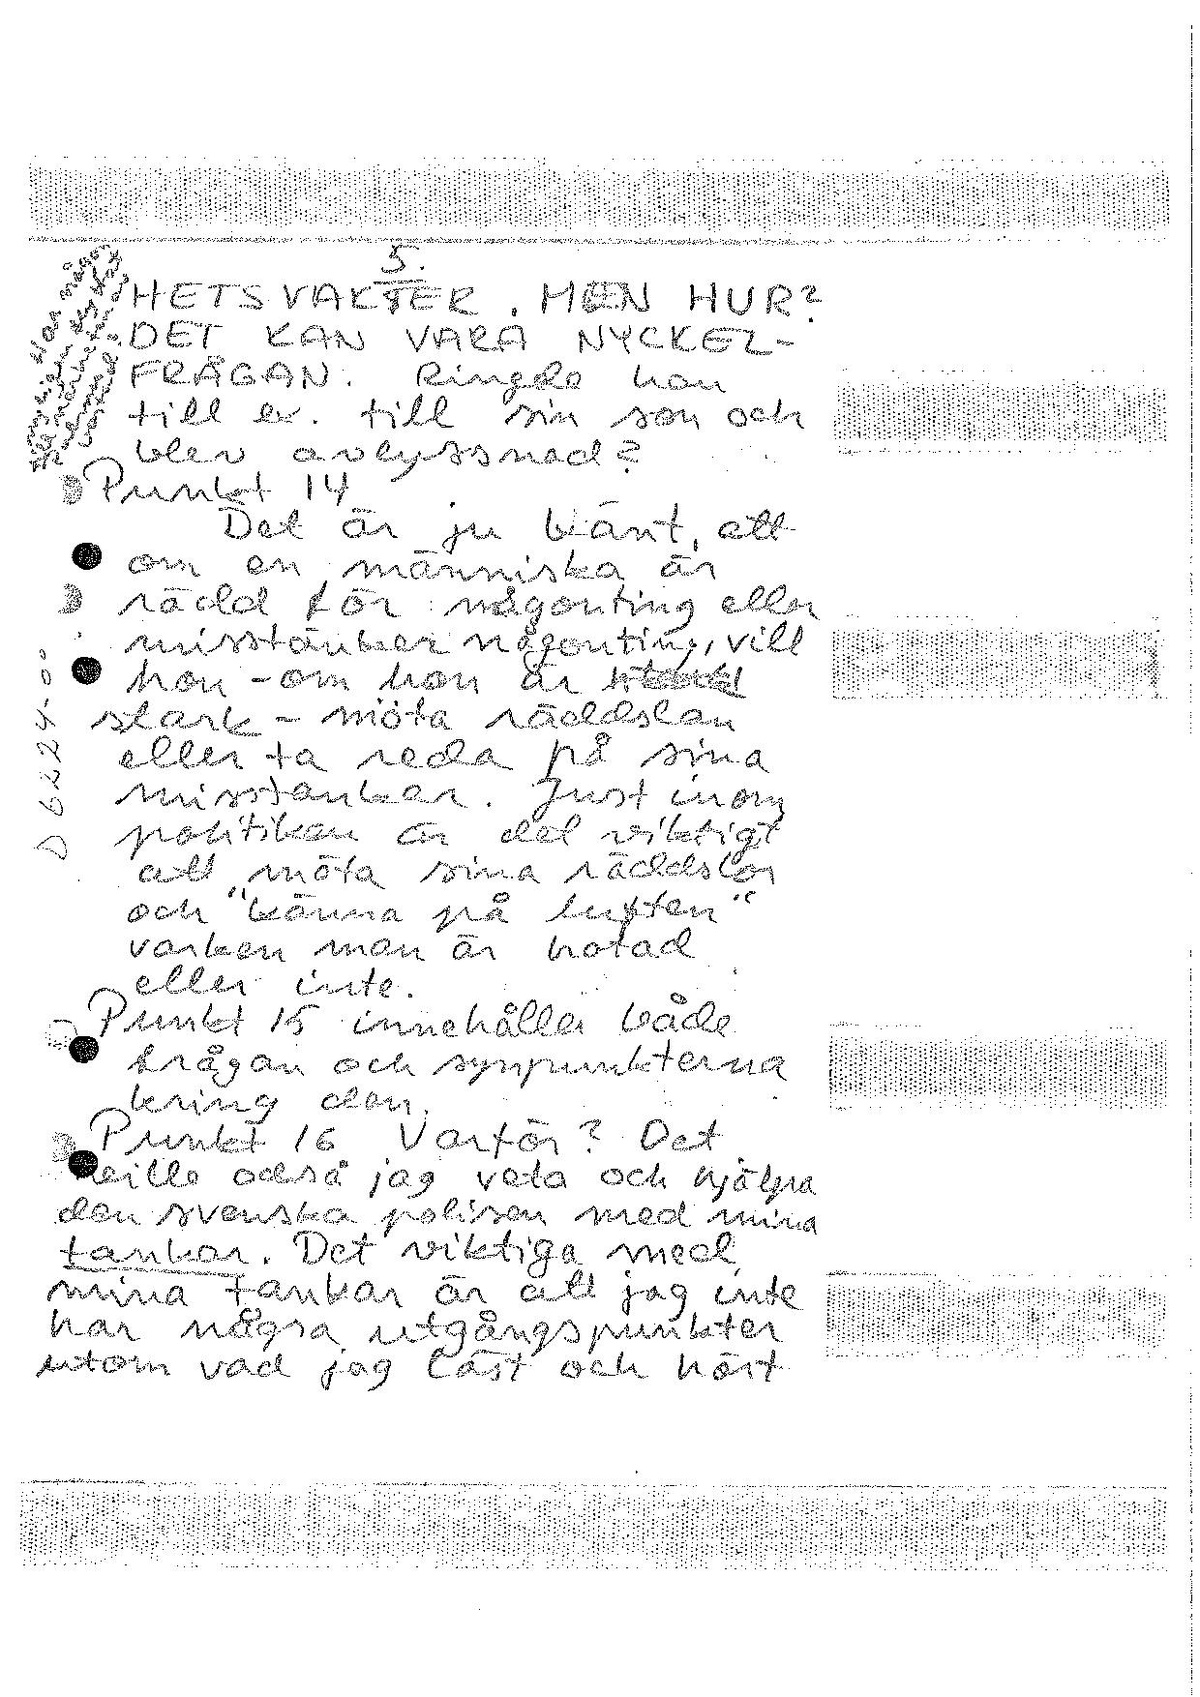 Pol-1986-03-05 D6224-00 Brev med tankar om mordet.pdf